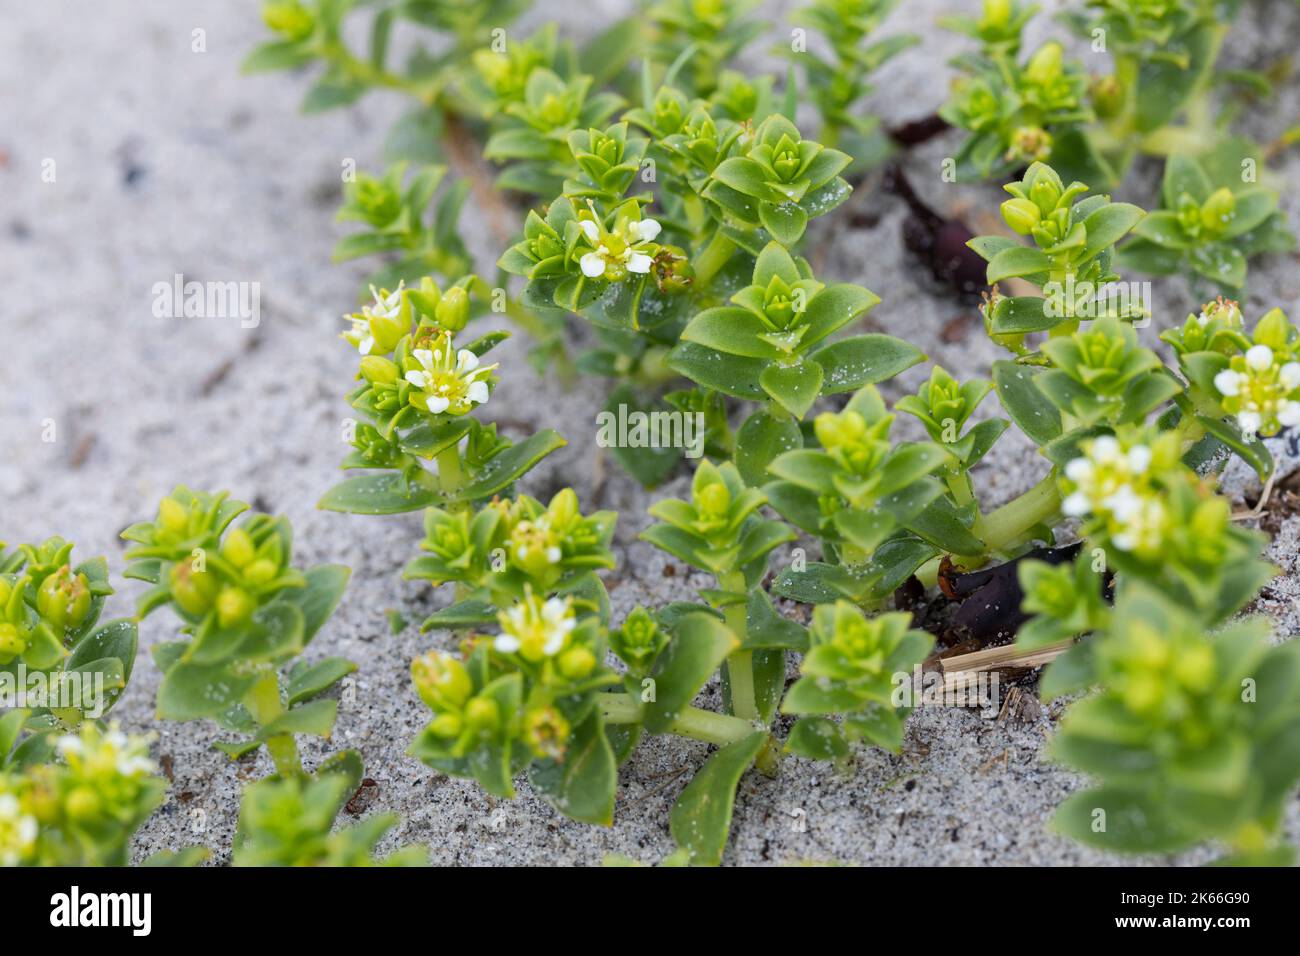 Sandwort de mer, mauvaise herbe de mer (Honckenya peploides), floraison sur un sol sablonneux, Scandinavie Banque D'Images